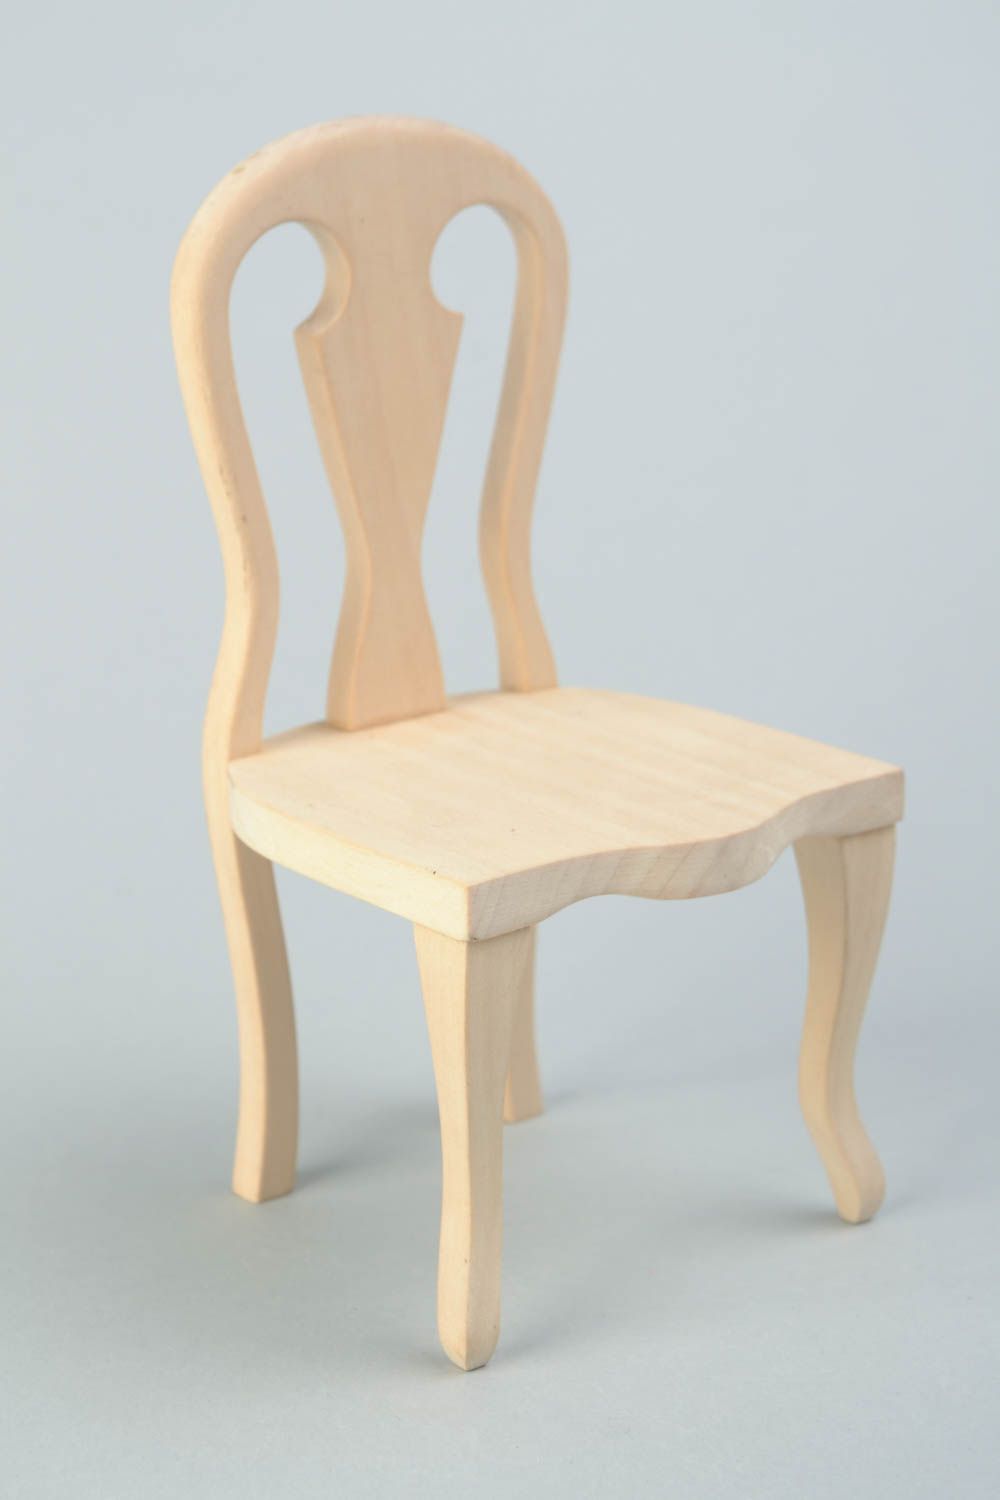 Hölzerner Rohling Stuhl zum Bemalen oder für Decoupage für Puppen Handarbeit foto 3